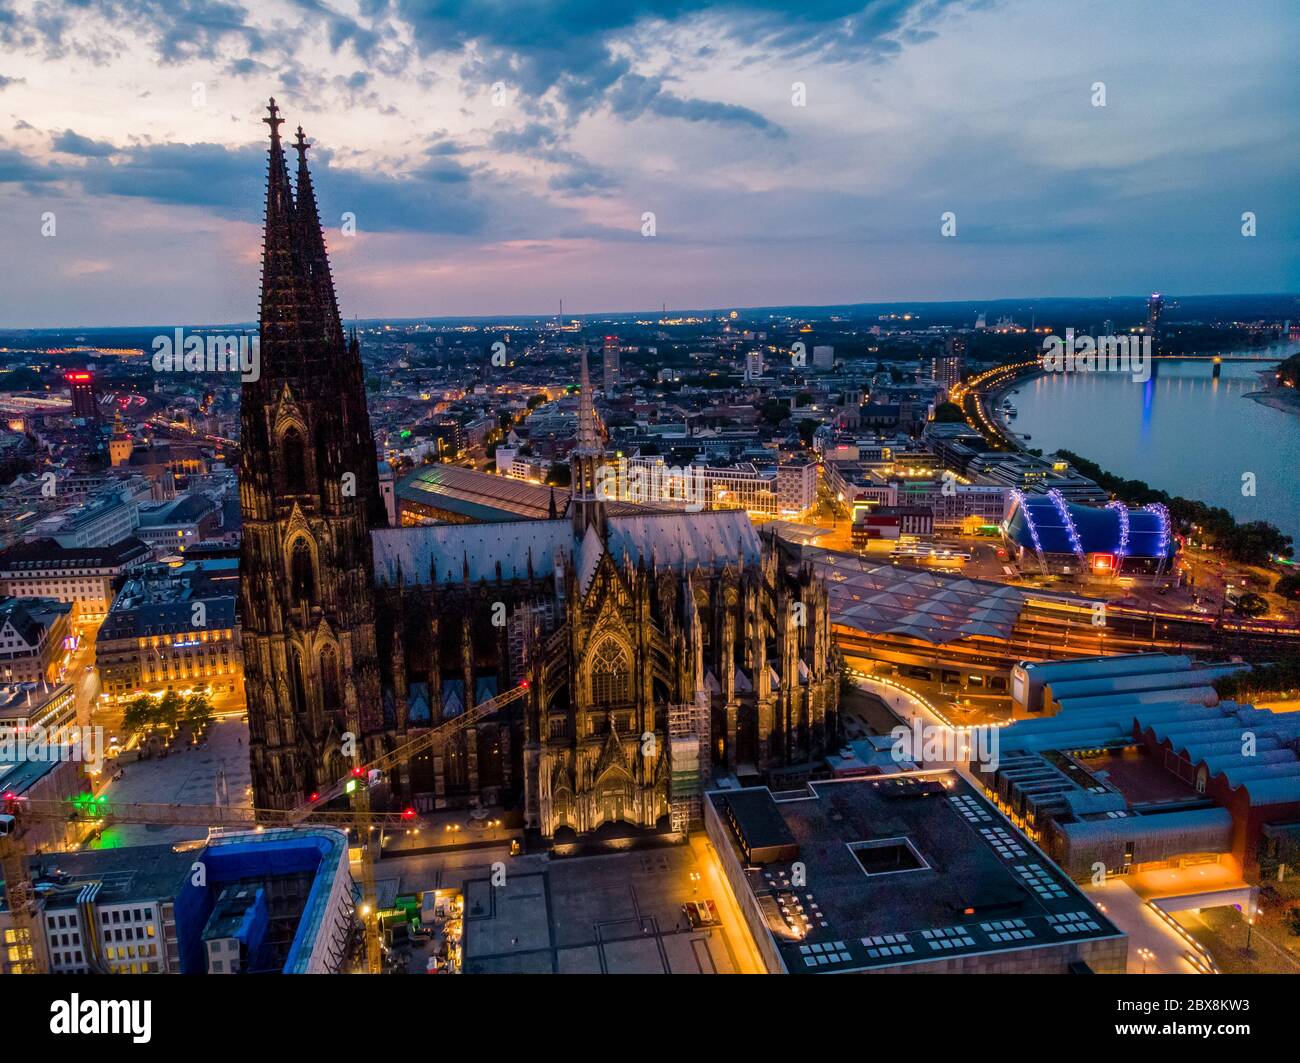 Cathédrale de Cologne Koln au coucher du soleil , vie aérienne de drone au-dessus de Cologne et de la rivière rhein au coucher du soleil en Allemagne Europe Banque D'Images